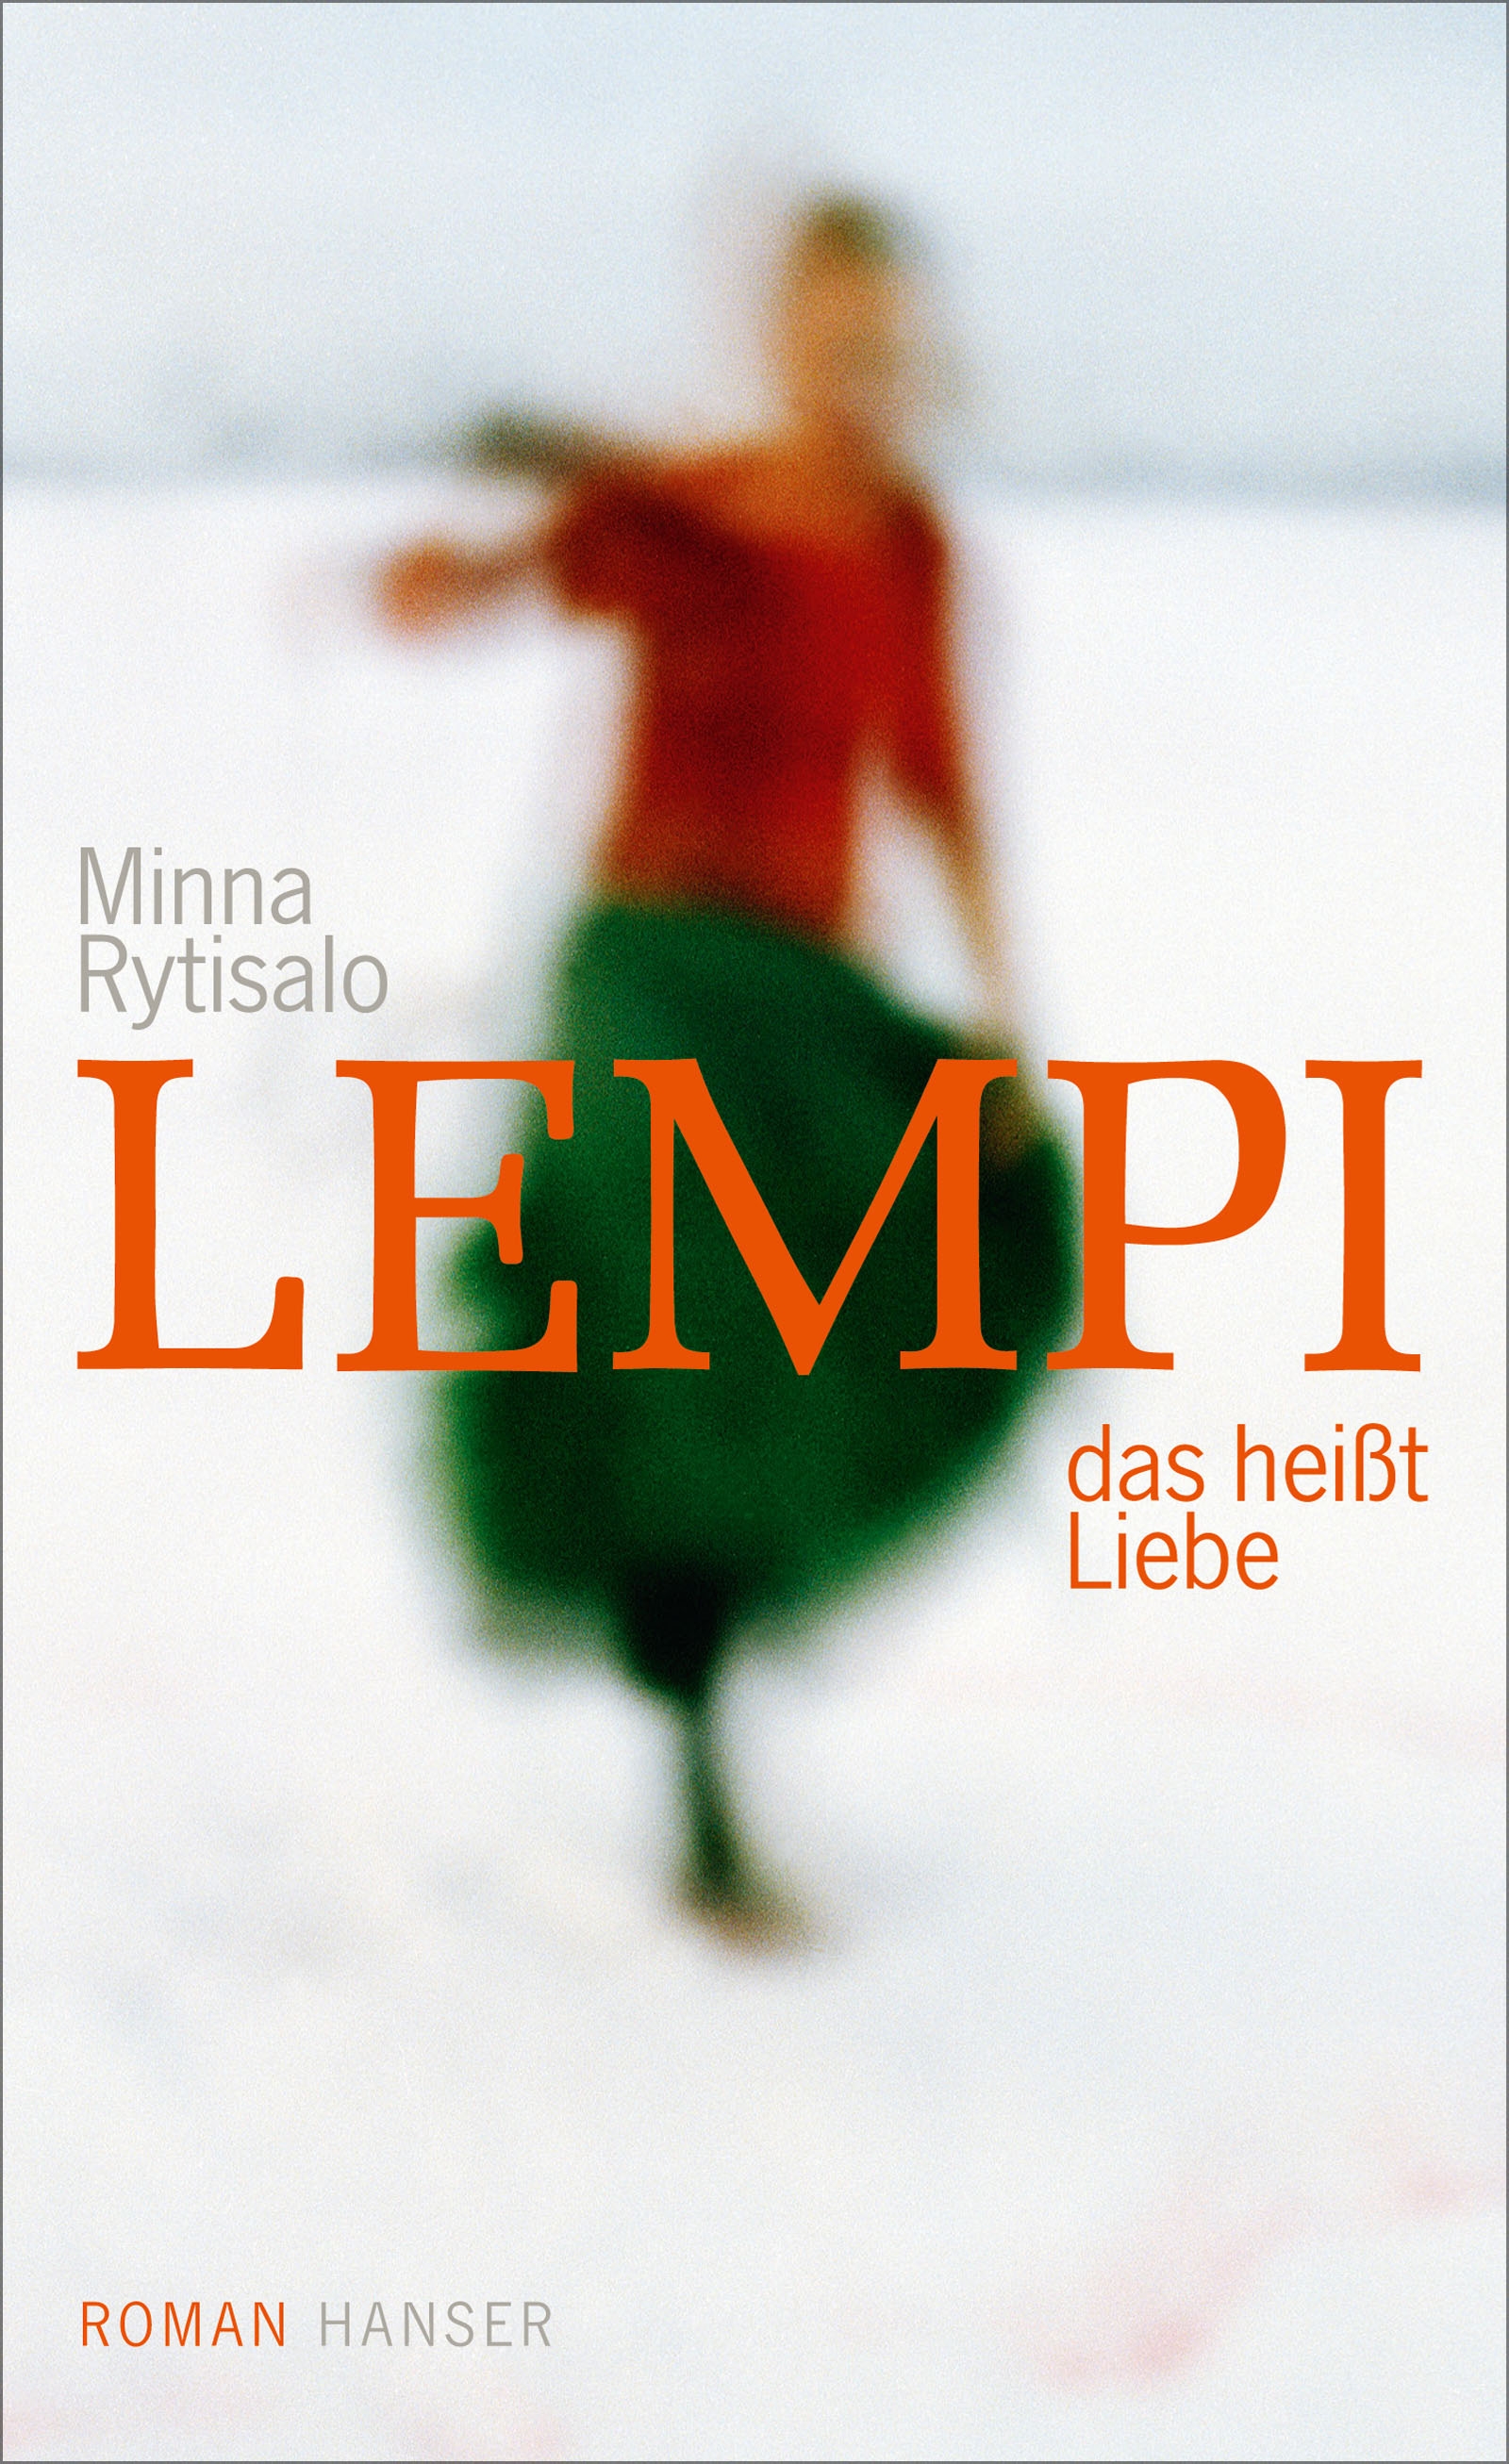 https://www.hanser-literaturverlage.de/buch/lempi-das-heisst-liebe/978-3-446-26004-7/